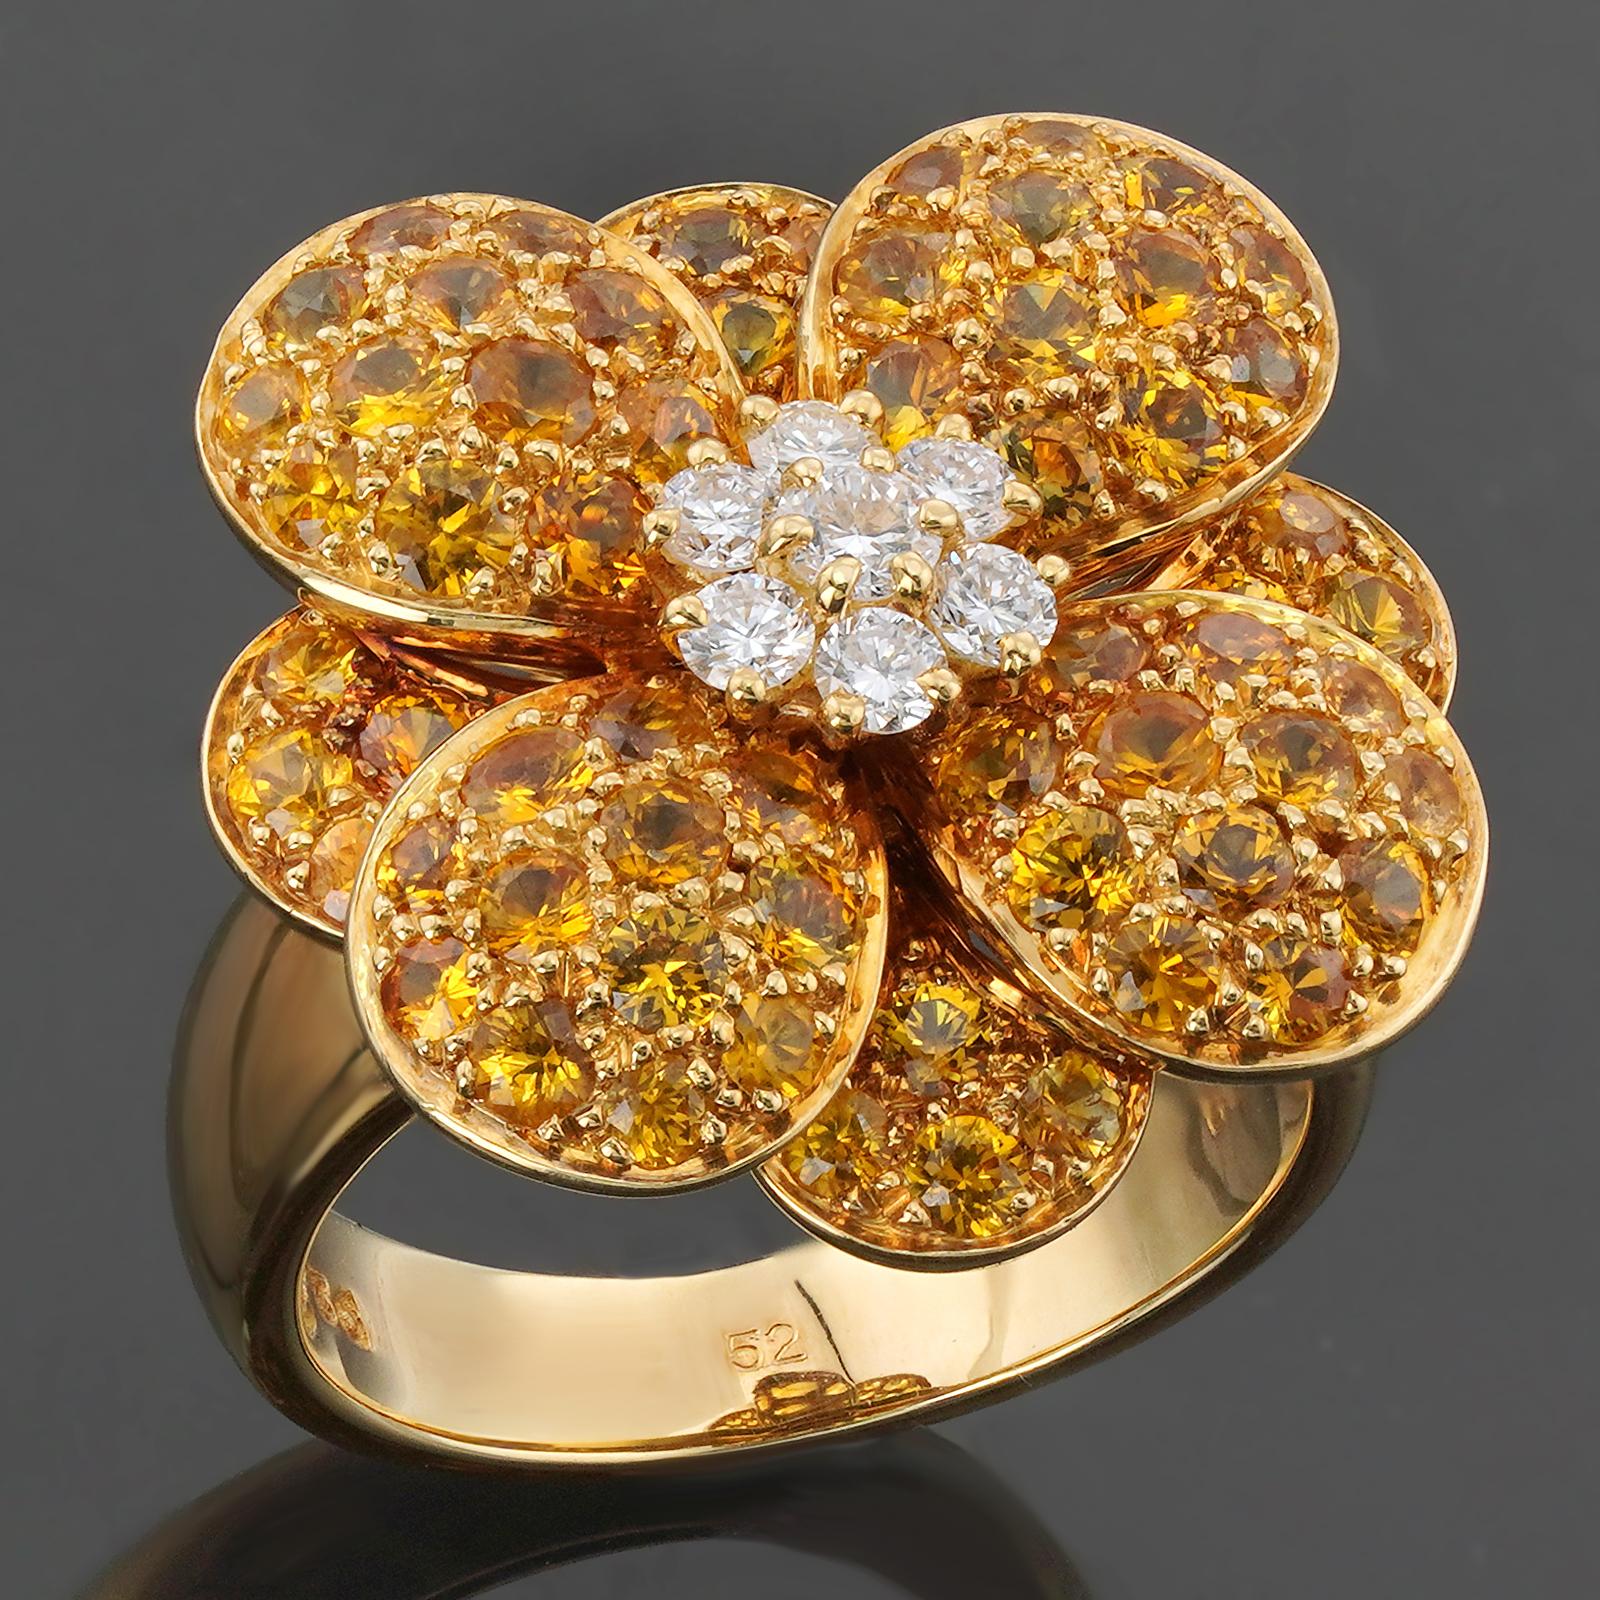 Dieser atemberaubende, authentische Ring von Van Cleef & Arpels zeigt ein lebhaftes Blumendesign aus 18 Karat Gelbgold, besetzt mit gelben Saphiren und runden Brillanten E-F-G VVS1-VVS2. Hergestellt in Frankreich in den 1990er Jahren. Abmessungen: